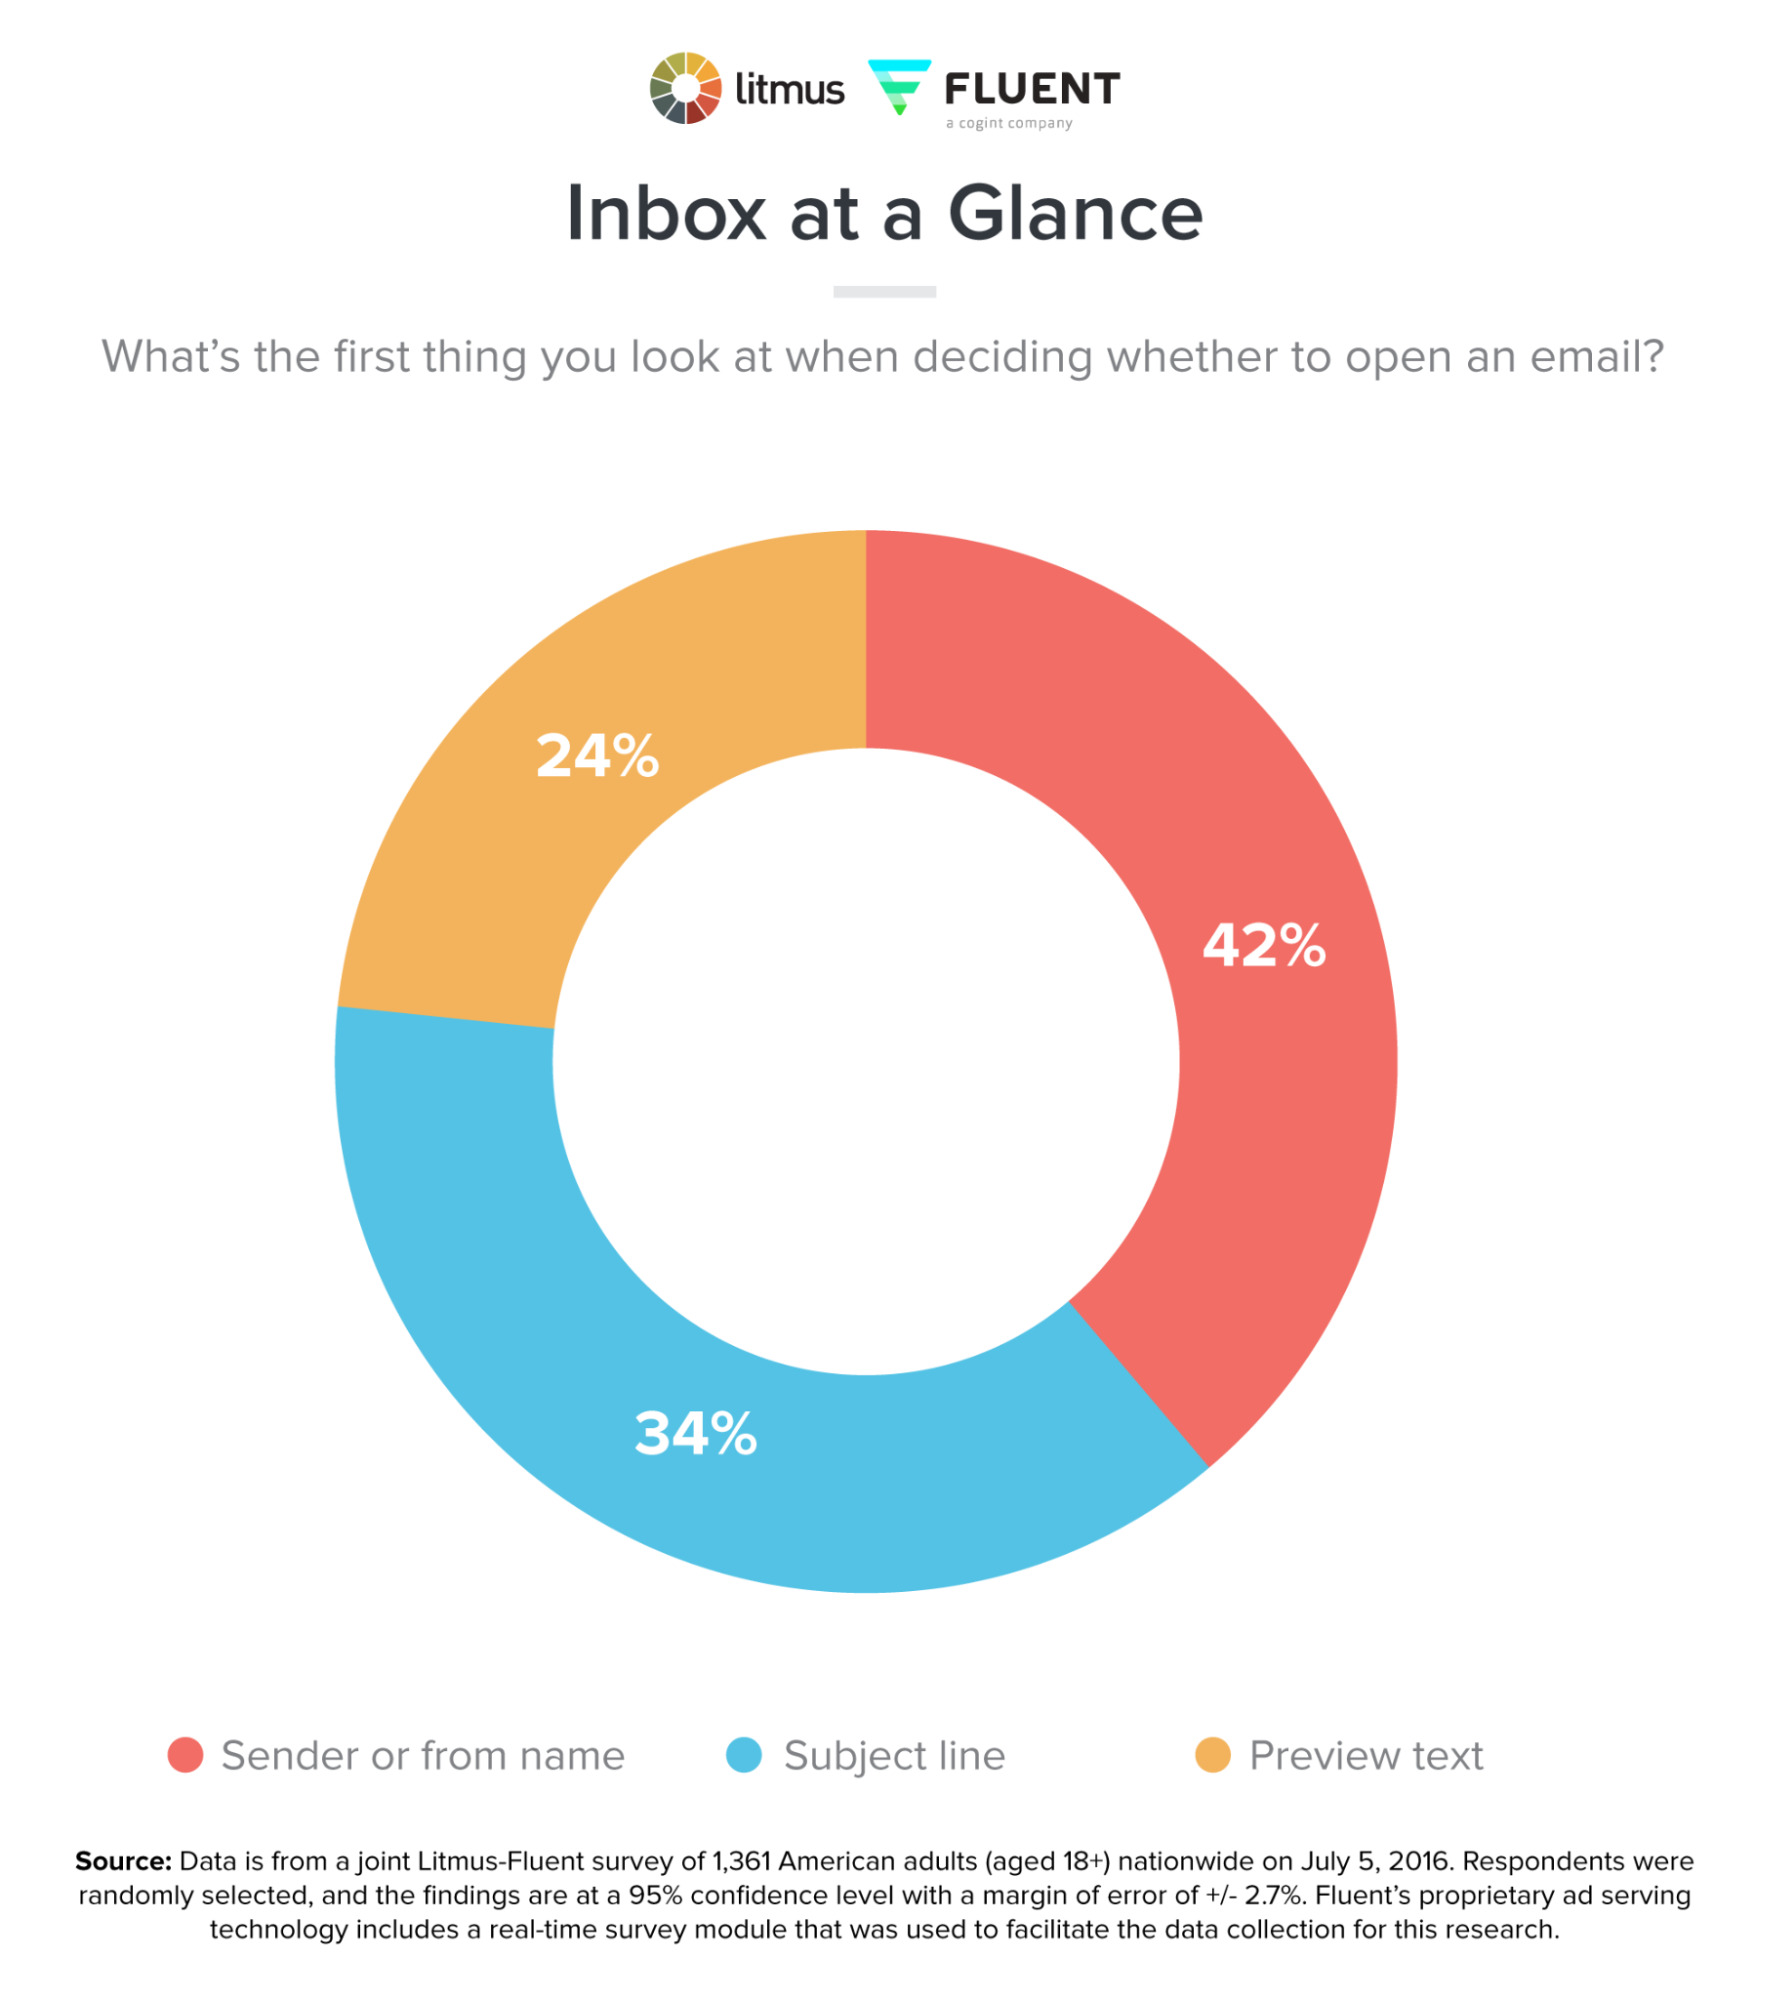 Estudio que indica que un 42 % de los encuestados se fijan antes en el remitente que en el asunto de un correo